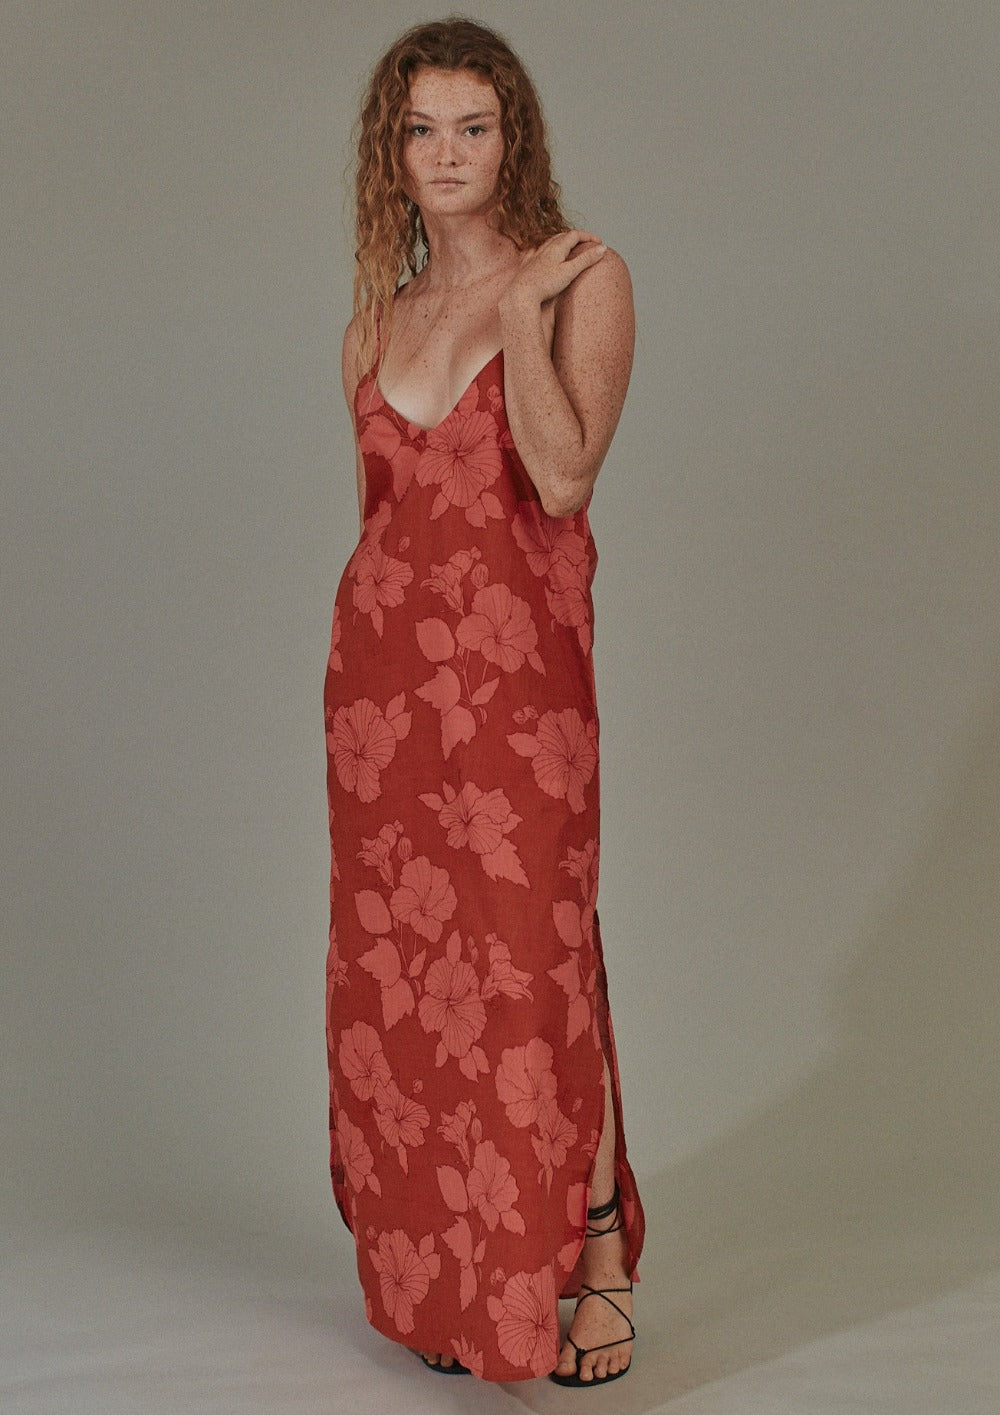 Acacia Swimwear Kalika Cotton Dress |petite rose|